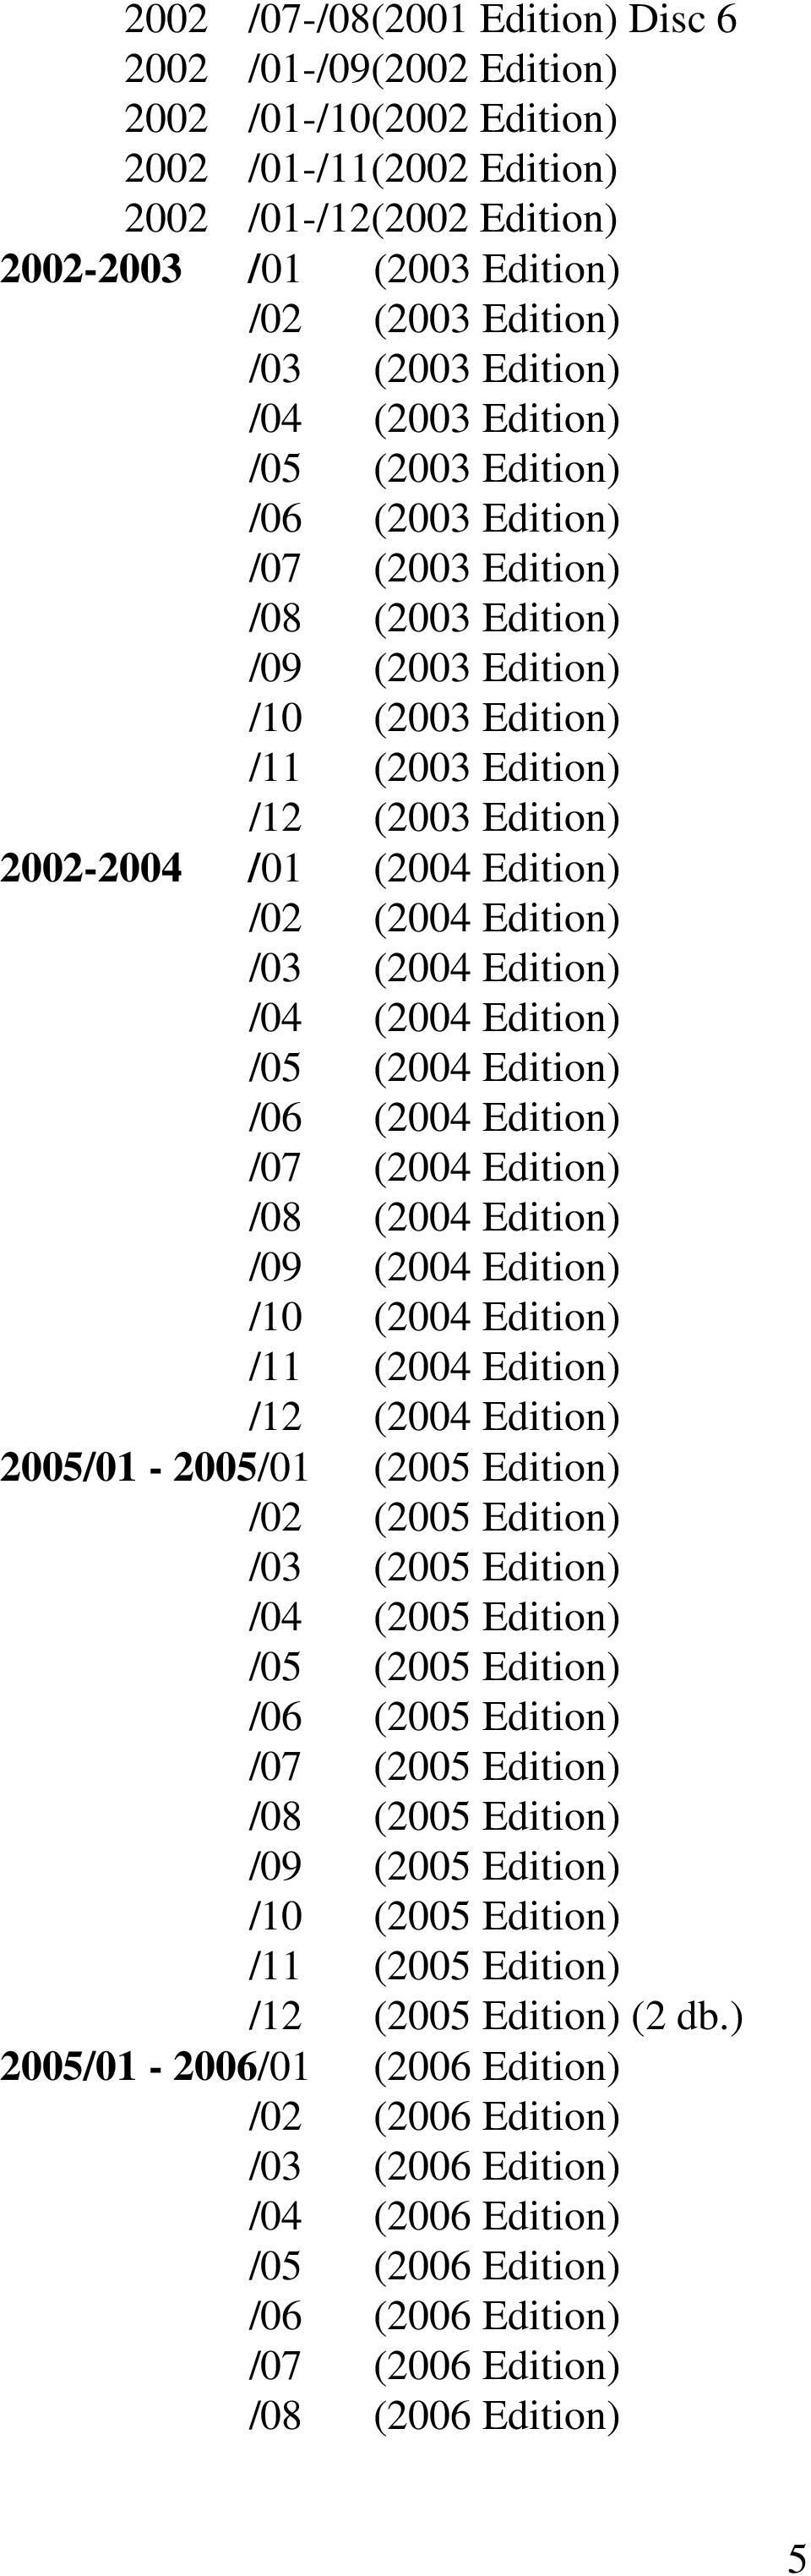 Edition) /02 (2004 Edition) /03 (2004 Edition) /04 (2004 Edition) /05 (2004 Edition) /06 (2004 Edition) /07 (2004 Edition) /08 (2004 Edition) /09 (2004 Edition) /10 (2004 Edition) /11 (2004 Edition)